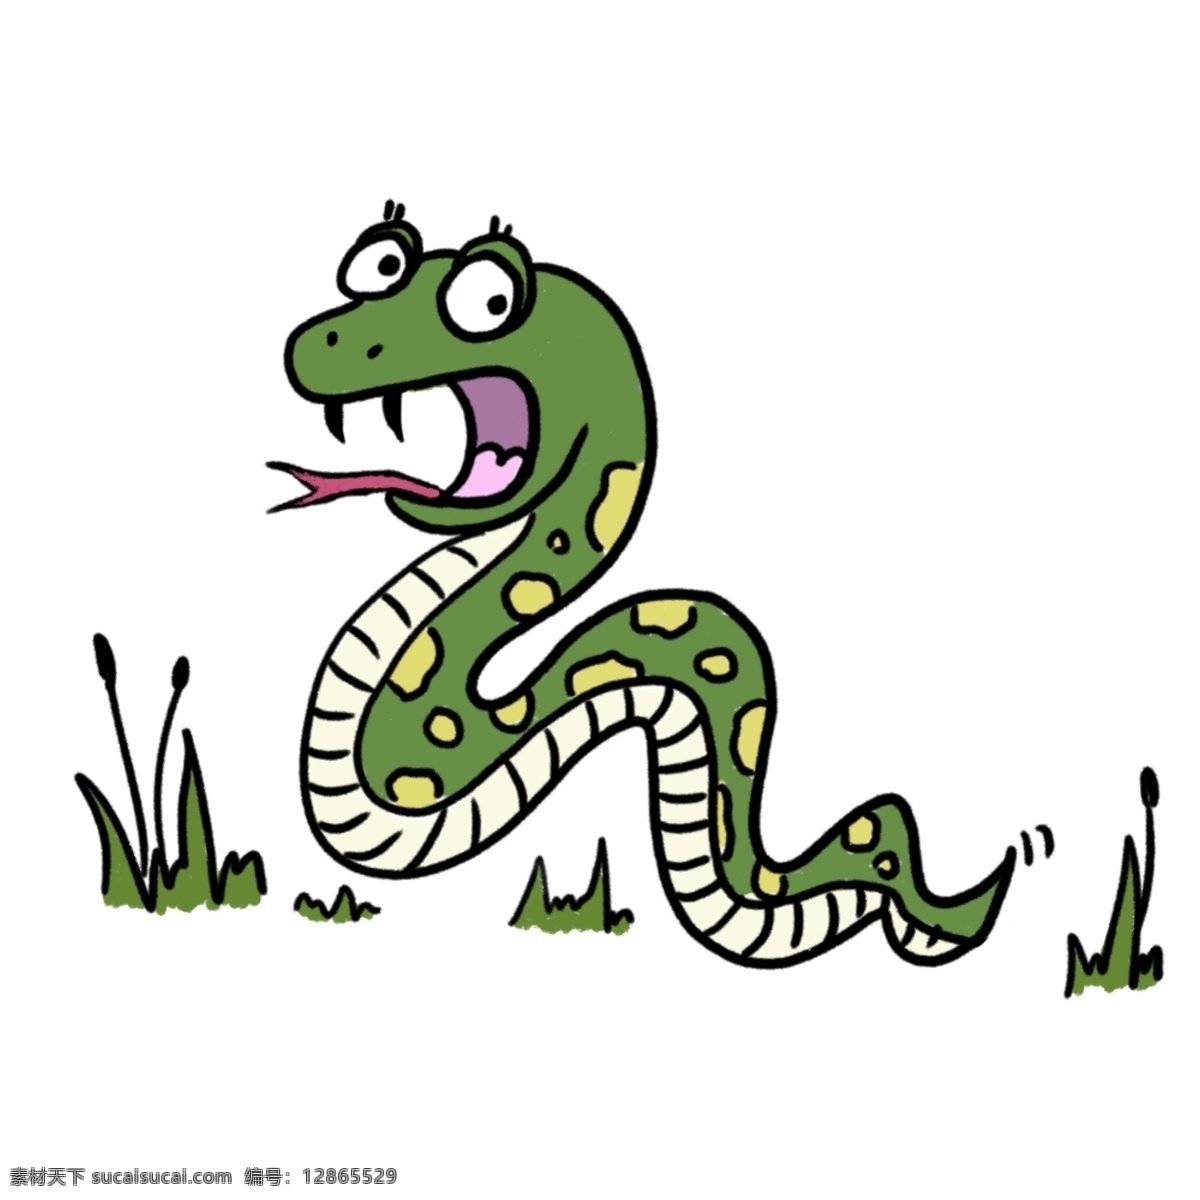 蛇 线稿 简笔画 卡通画 儿童画 儿童节素材 动物 黑白稿 生物世界 野生动物